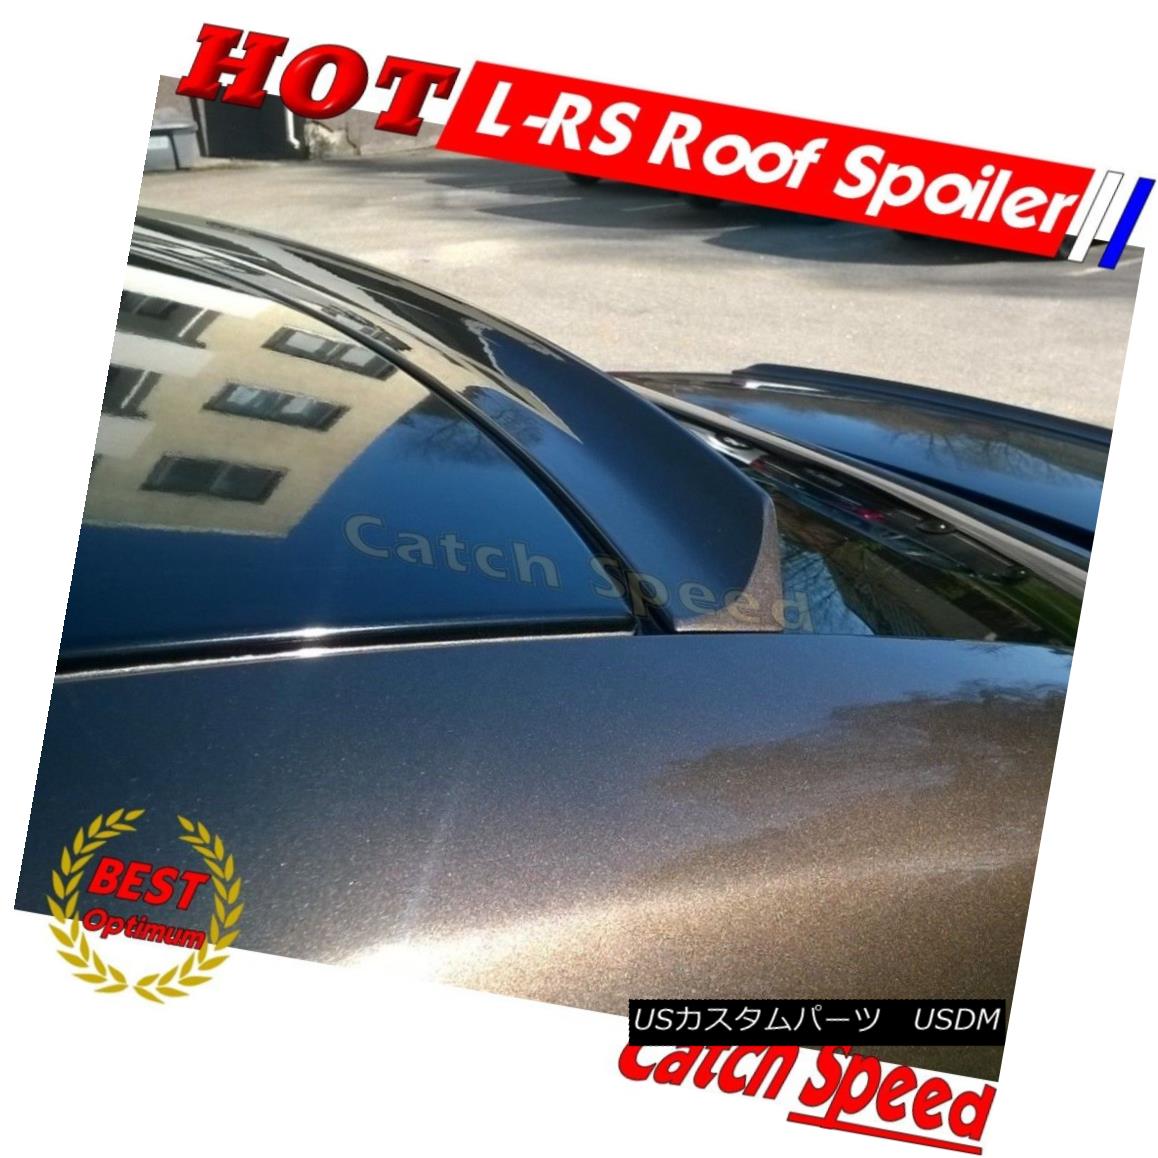 Honda CIVIC Ferio Sedan 2001-2003用のLRSタイプのリアルーフスポイラーウイングを塗装しましたか？